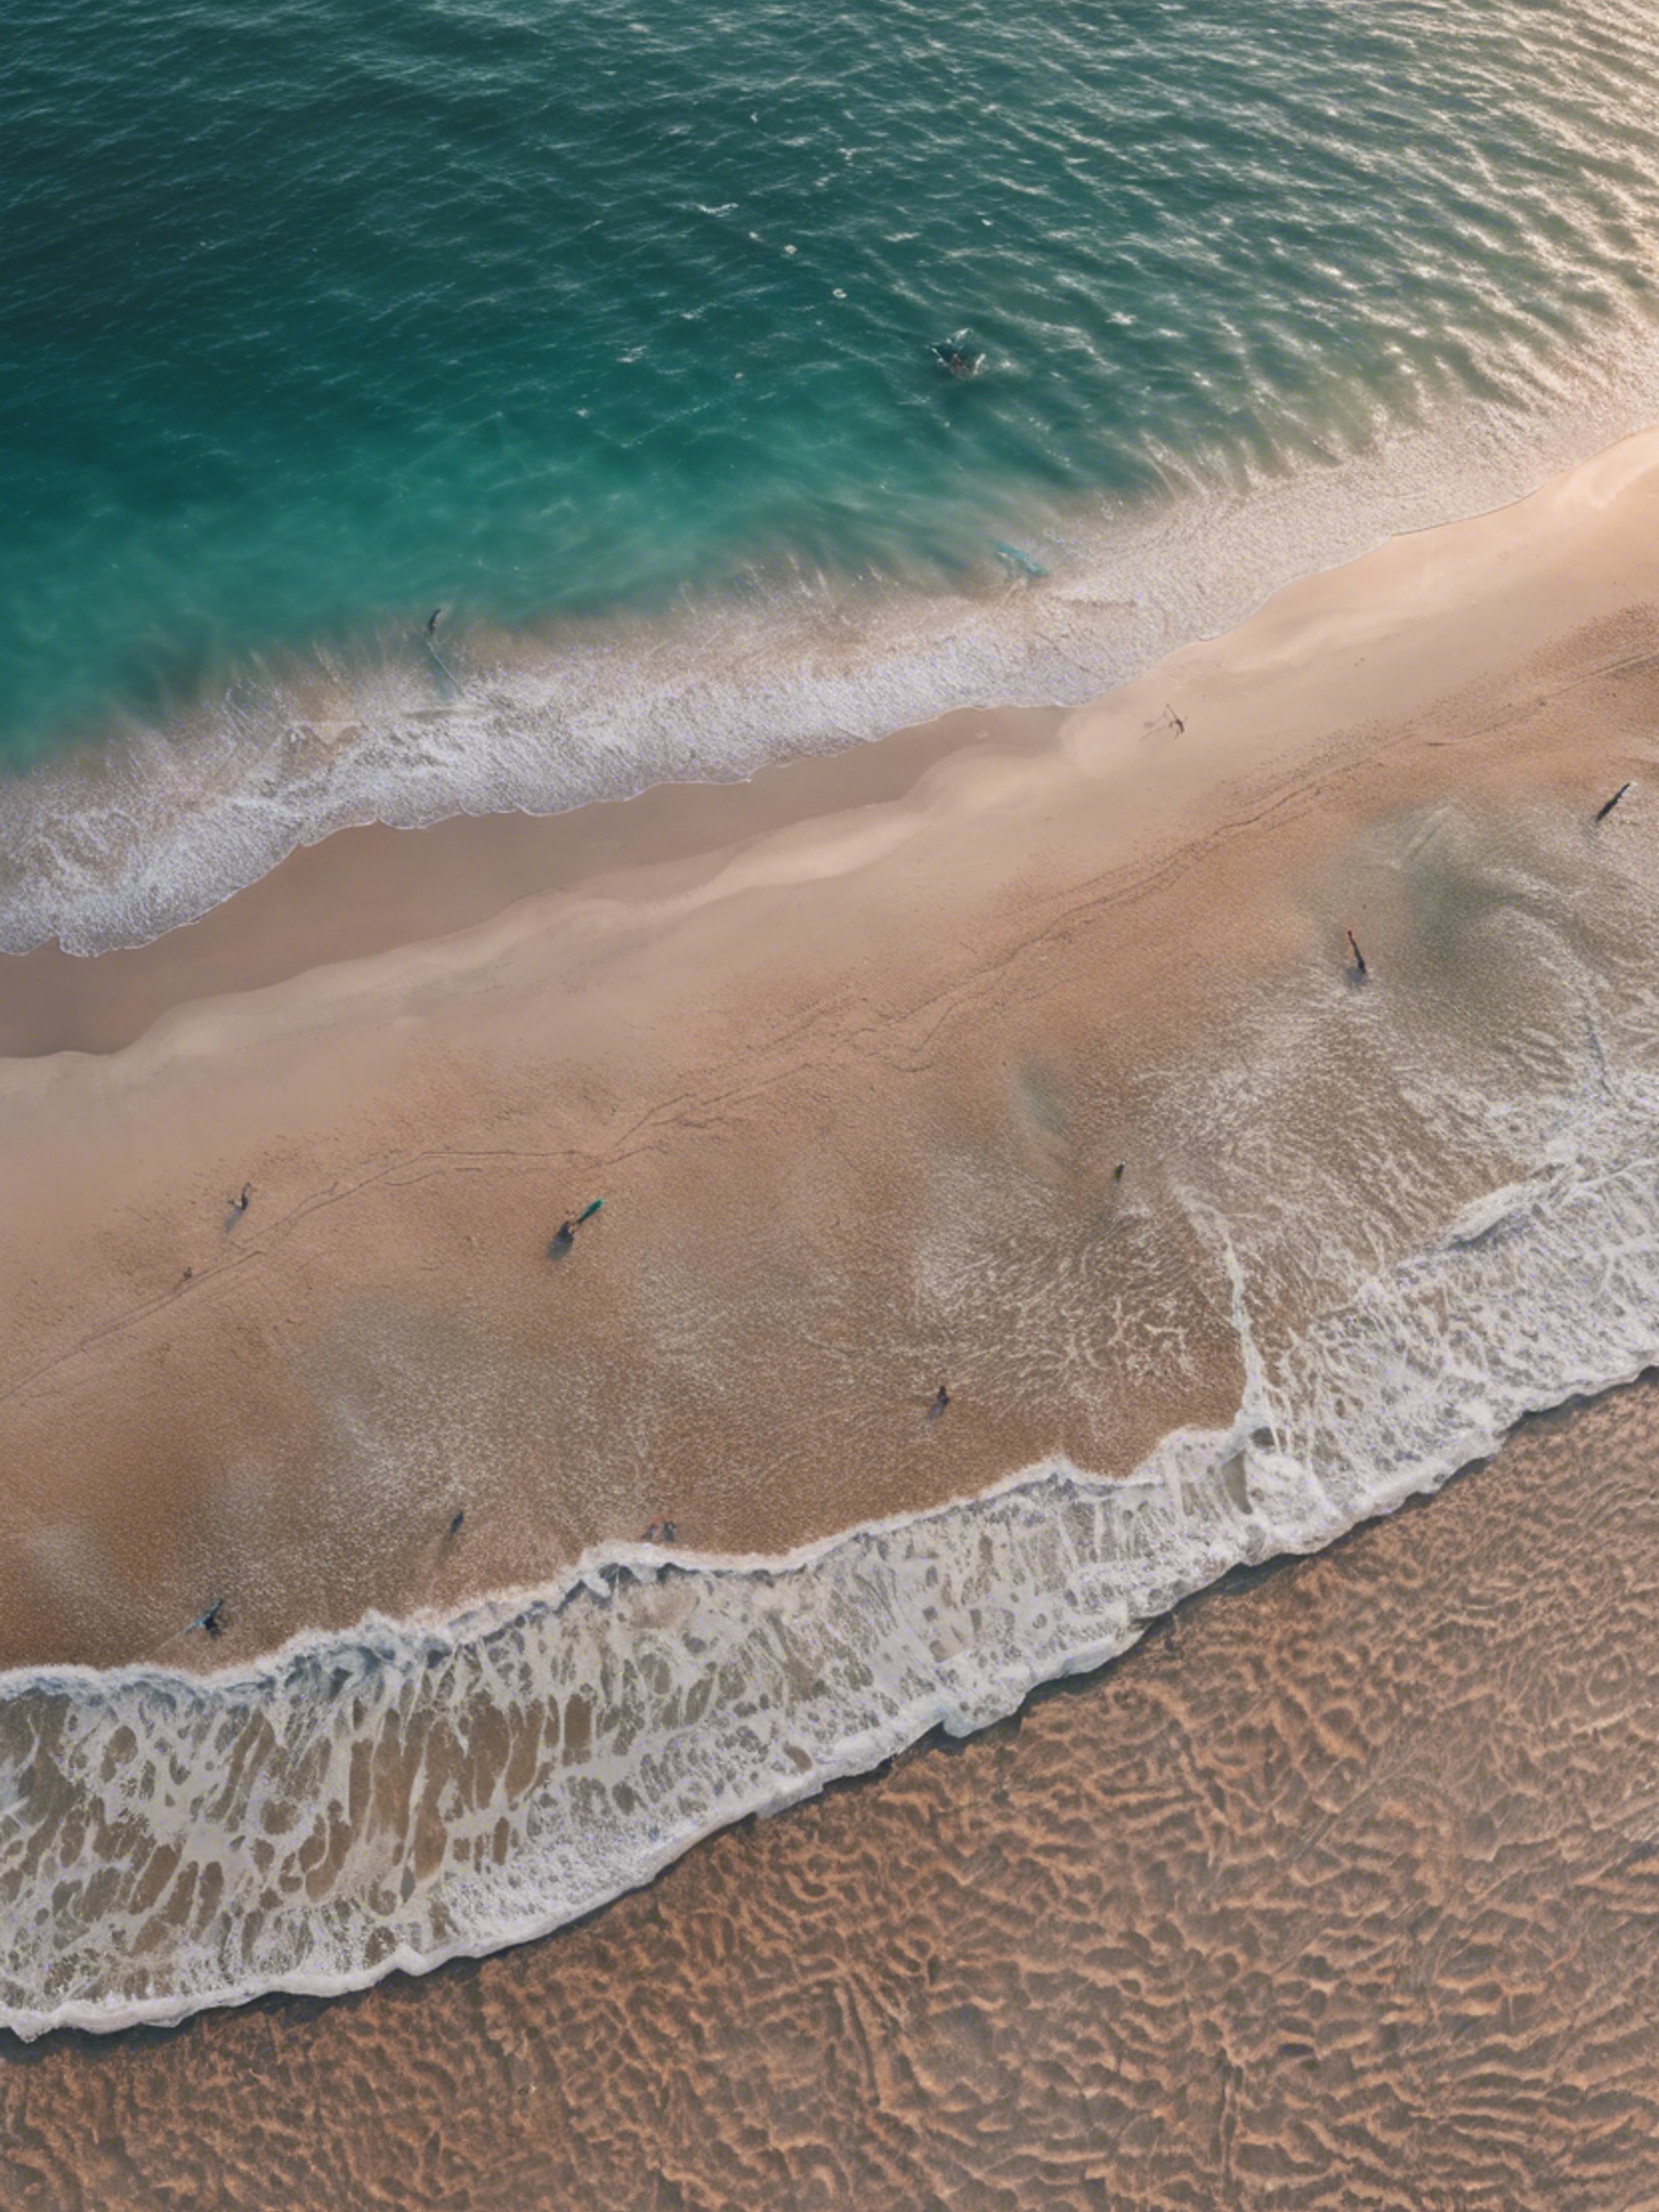 An aerial view of a cool teal sea meeting a sandy beach during dawn. Tapeta[fa6d444f65d7448095dd]